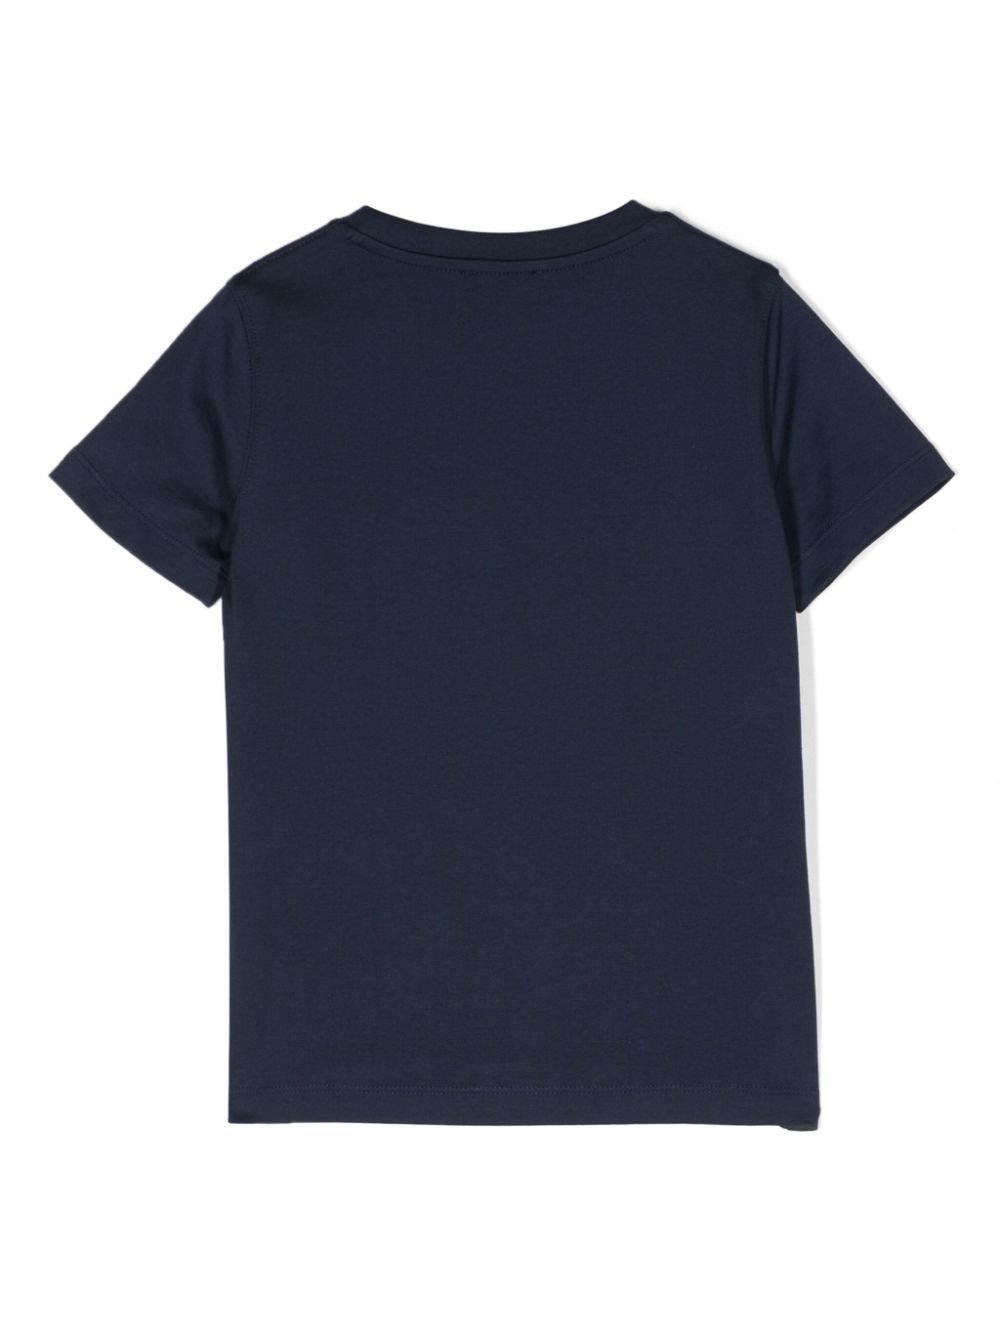 T-shirt in cotone con stampa numeri - Rubino Kids